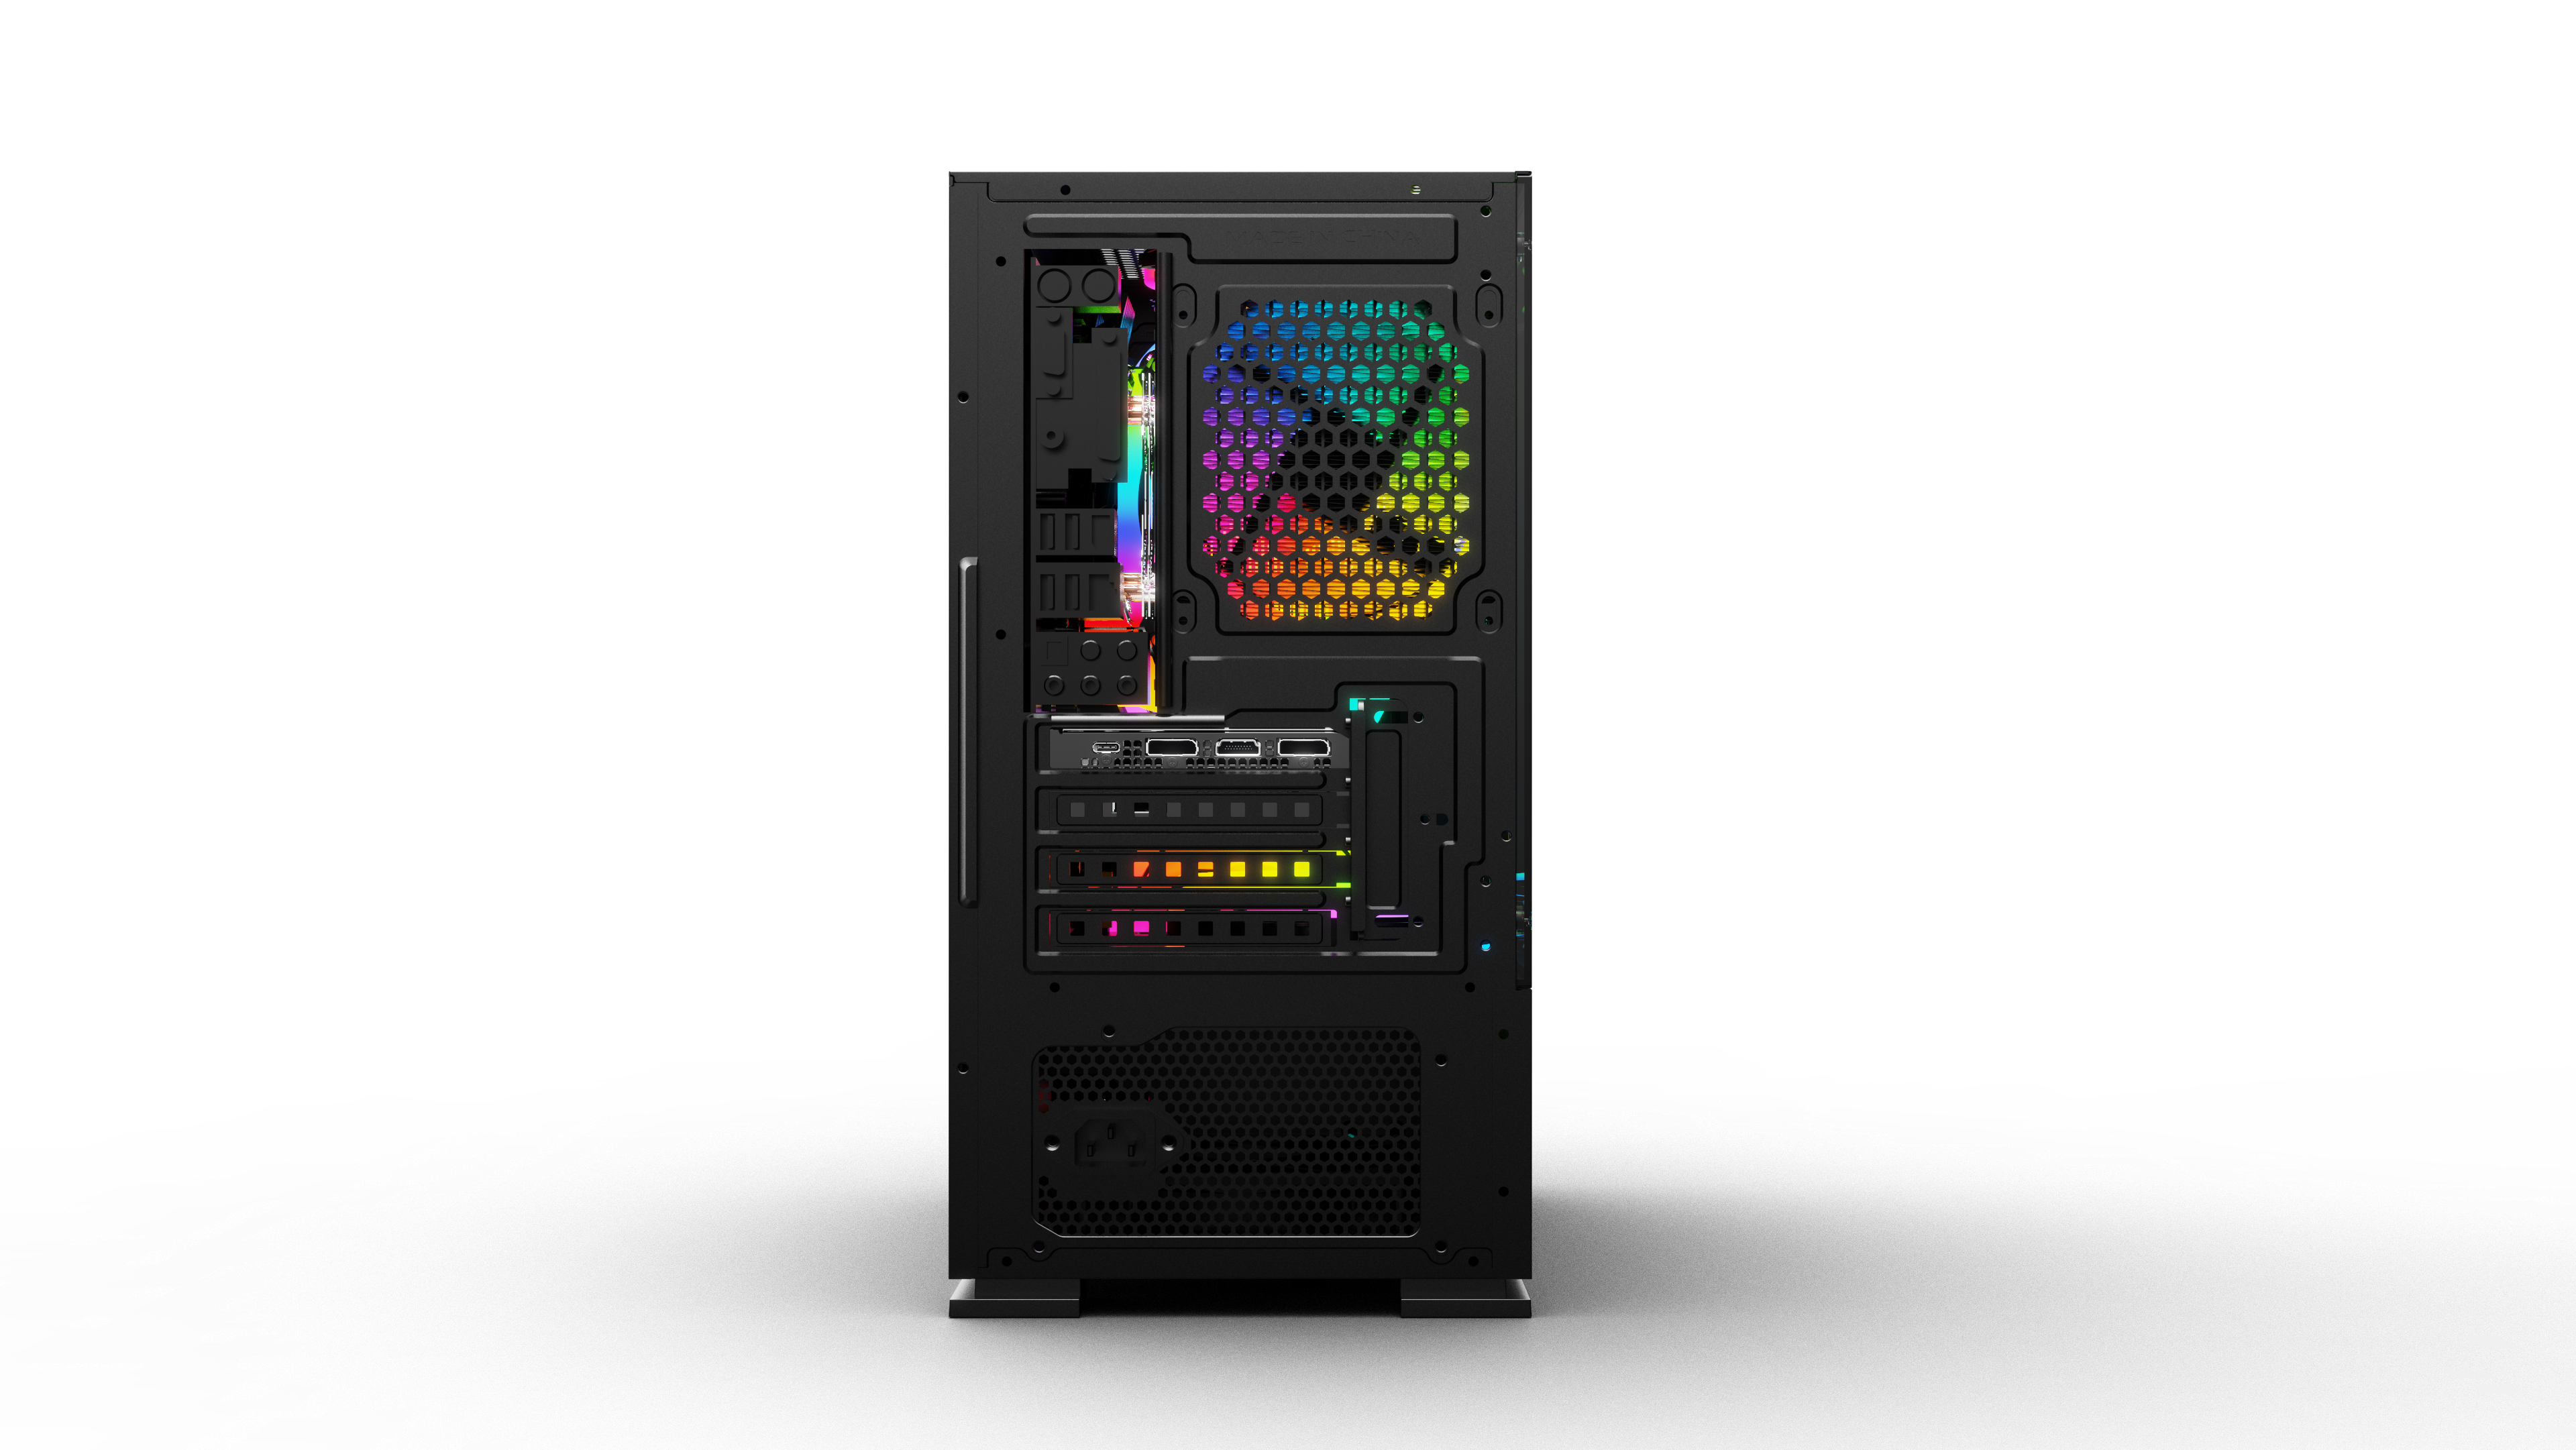 Vỏ máy vi tính KENOO ESPORT G362 - 3F - Mầu Đen ( sẵn 3fan mầu rainbow cố định )